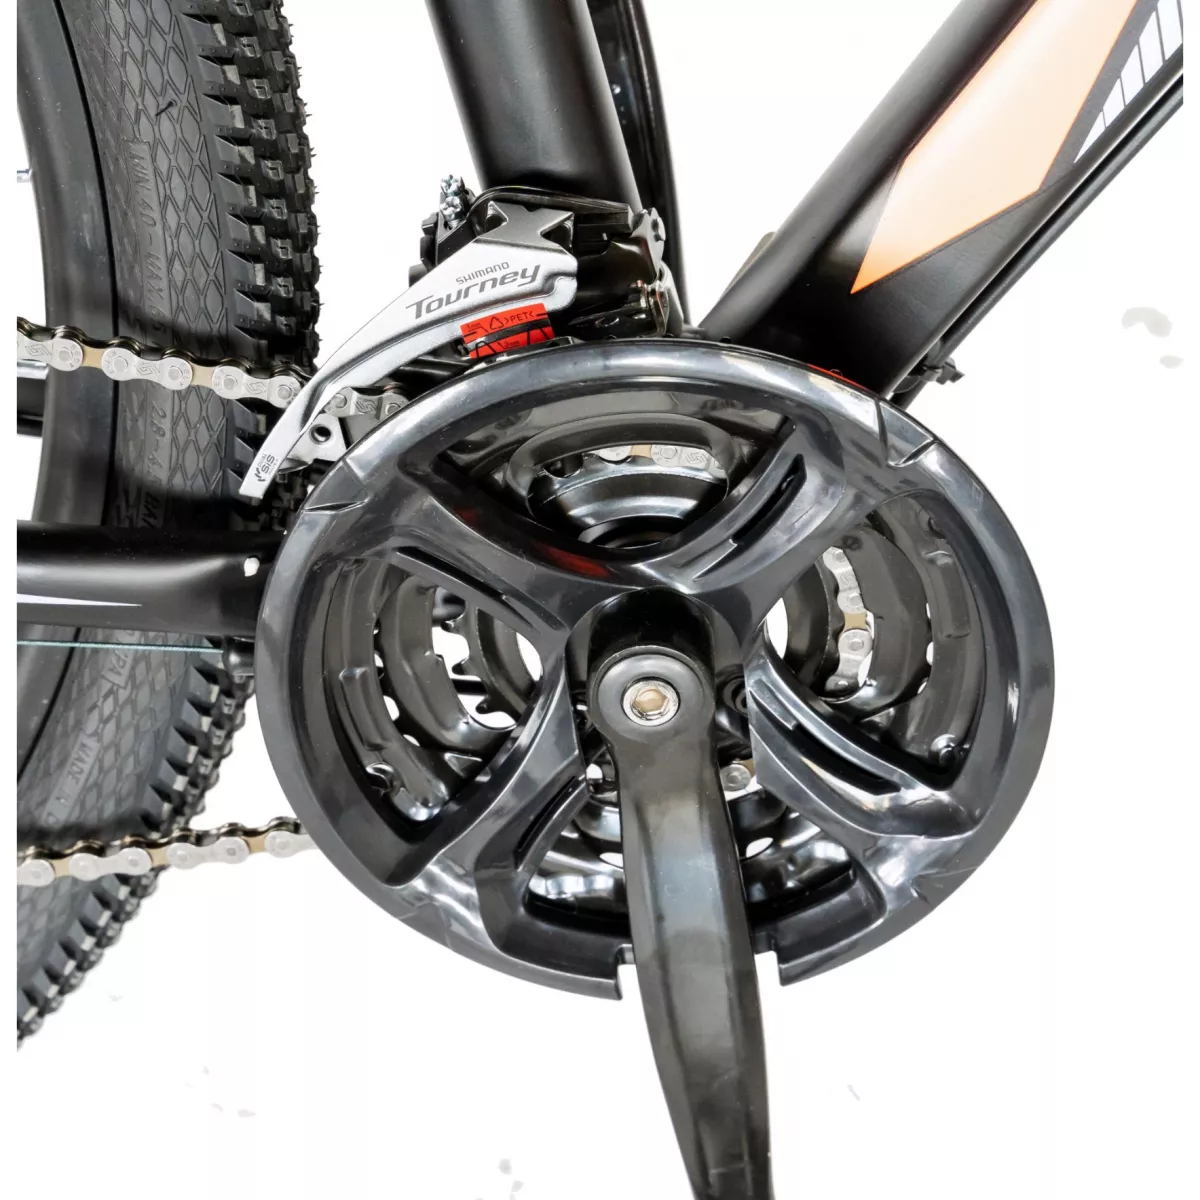 Bicicleta hidraulica MTB-HT CARPAT C2959H, roata 29", cadru aluminiu, frane hidraulice disc SHIMANO, 24 viteze, negru/portocaliu